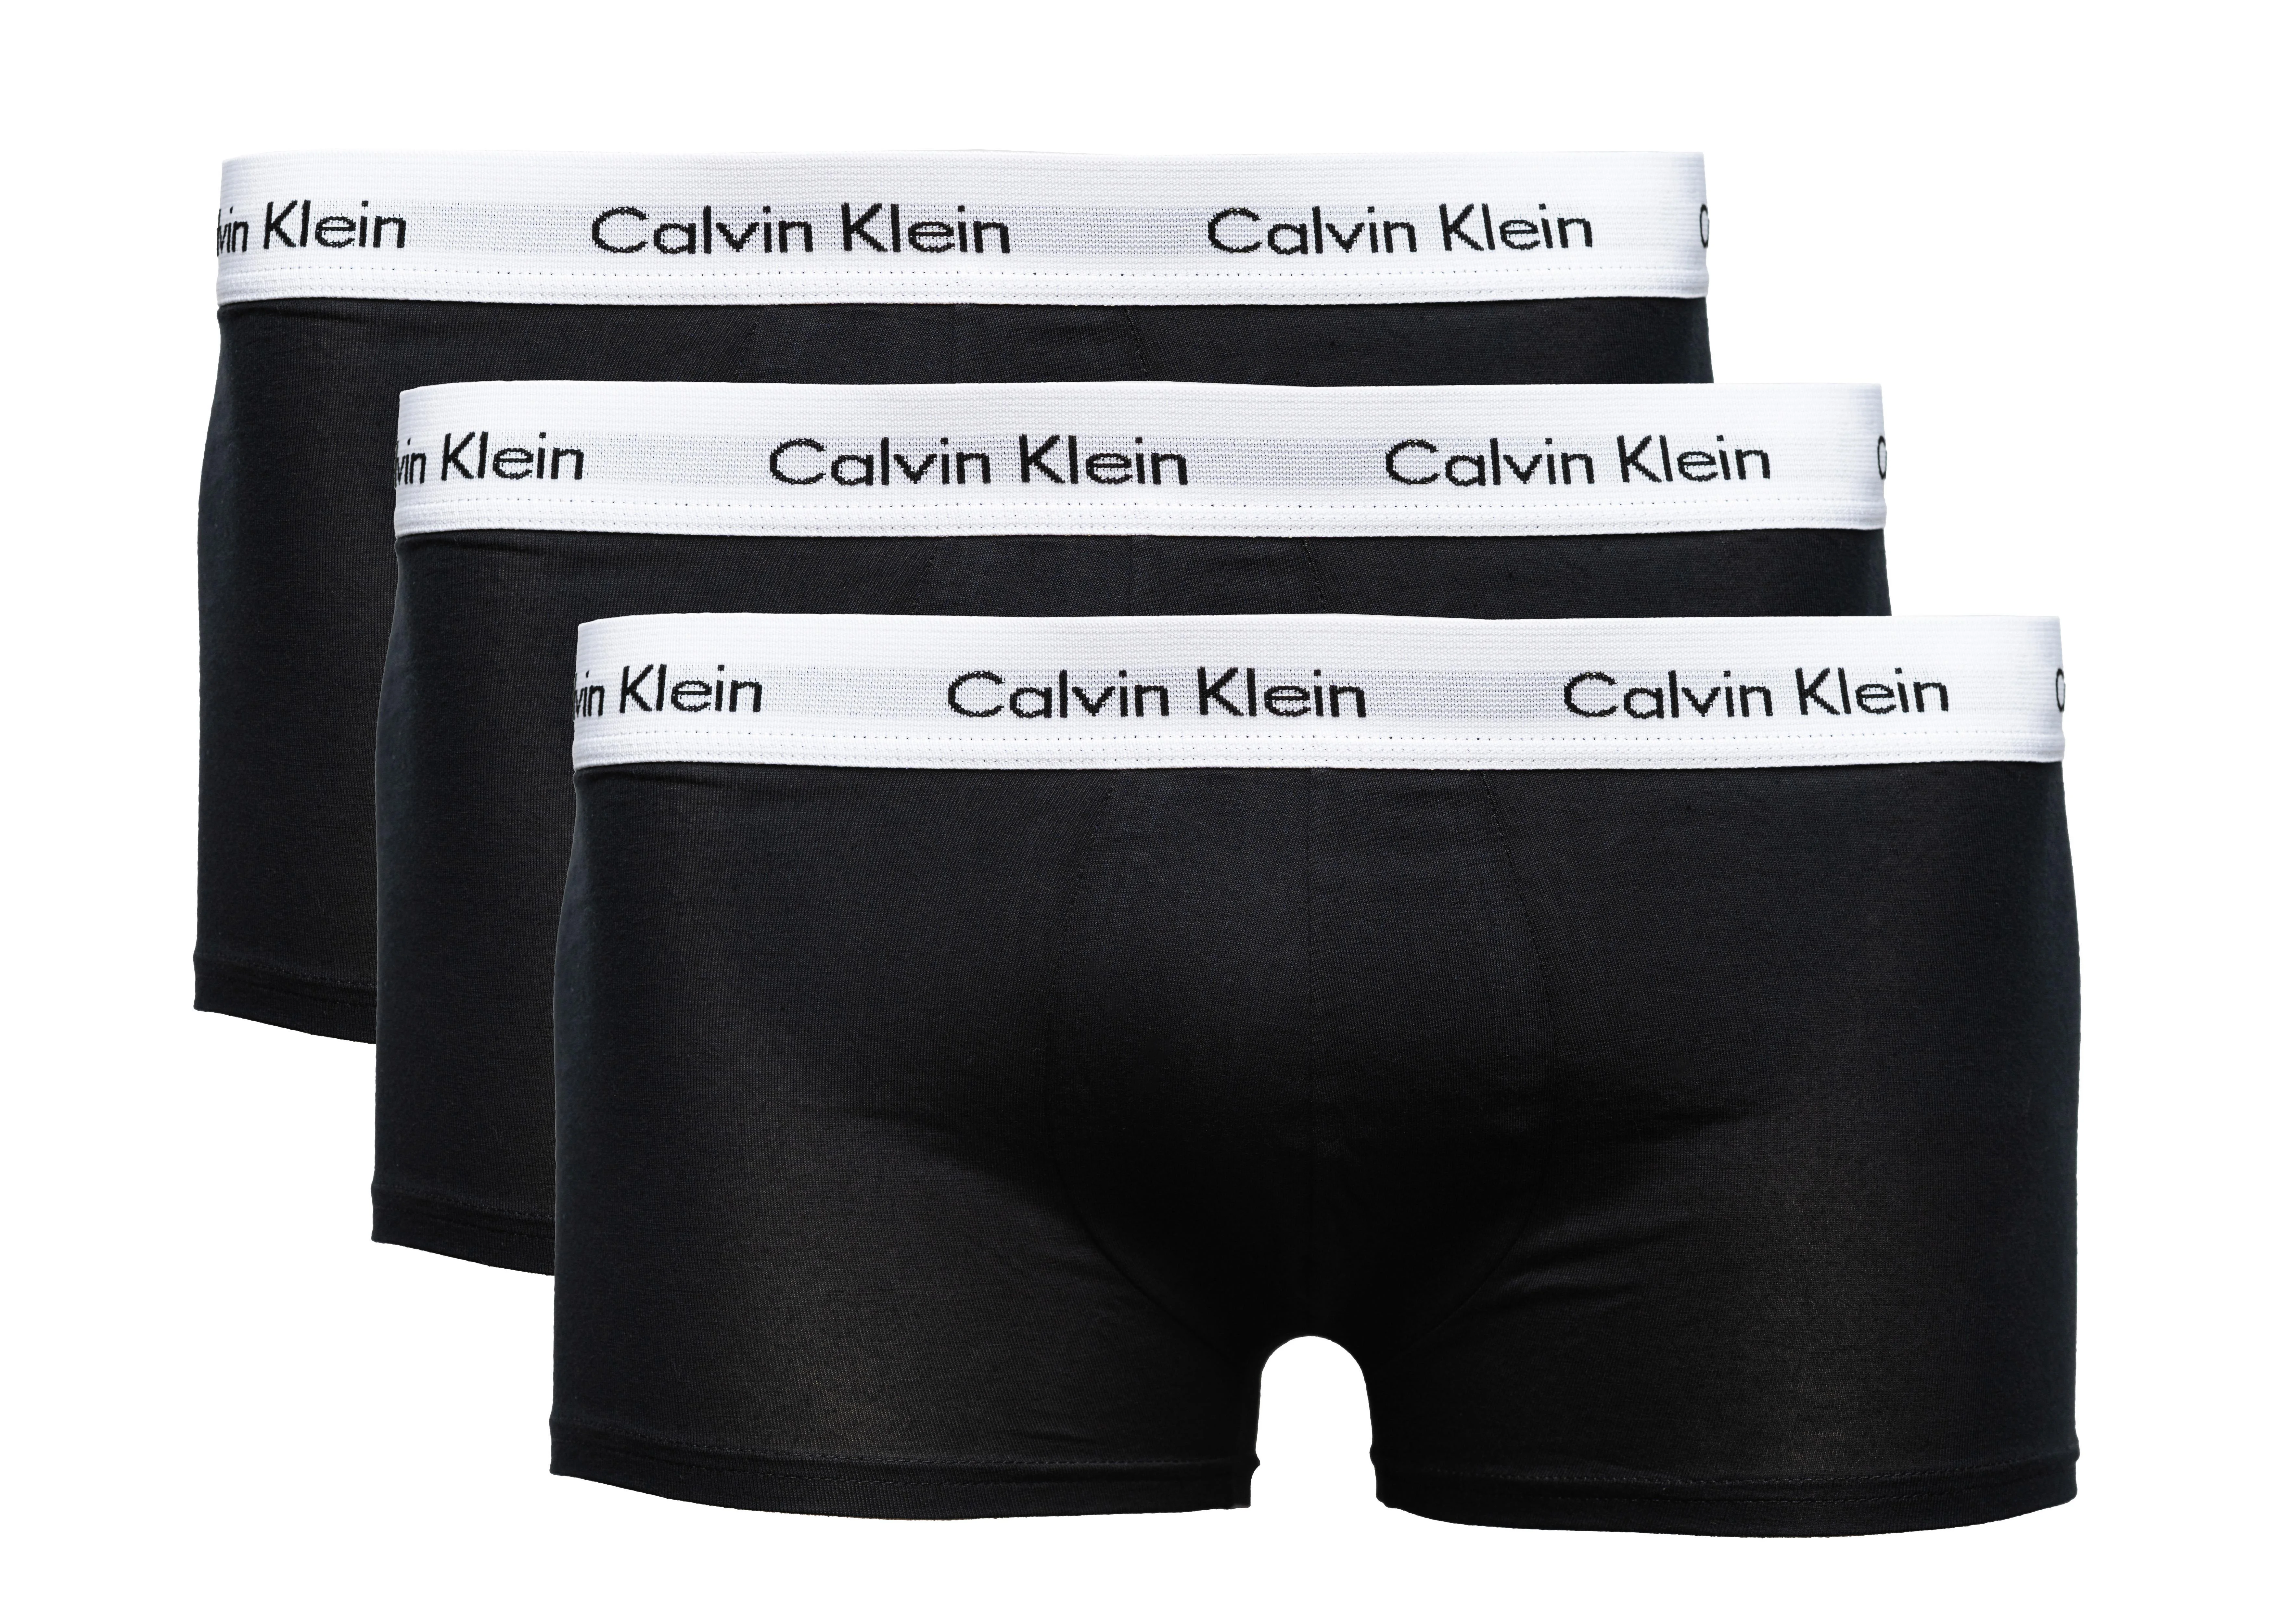 CALVIN KLEIN Boxershorts 3er-Pack  schwarz, Größe L